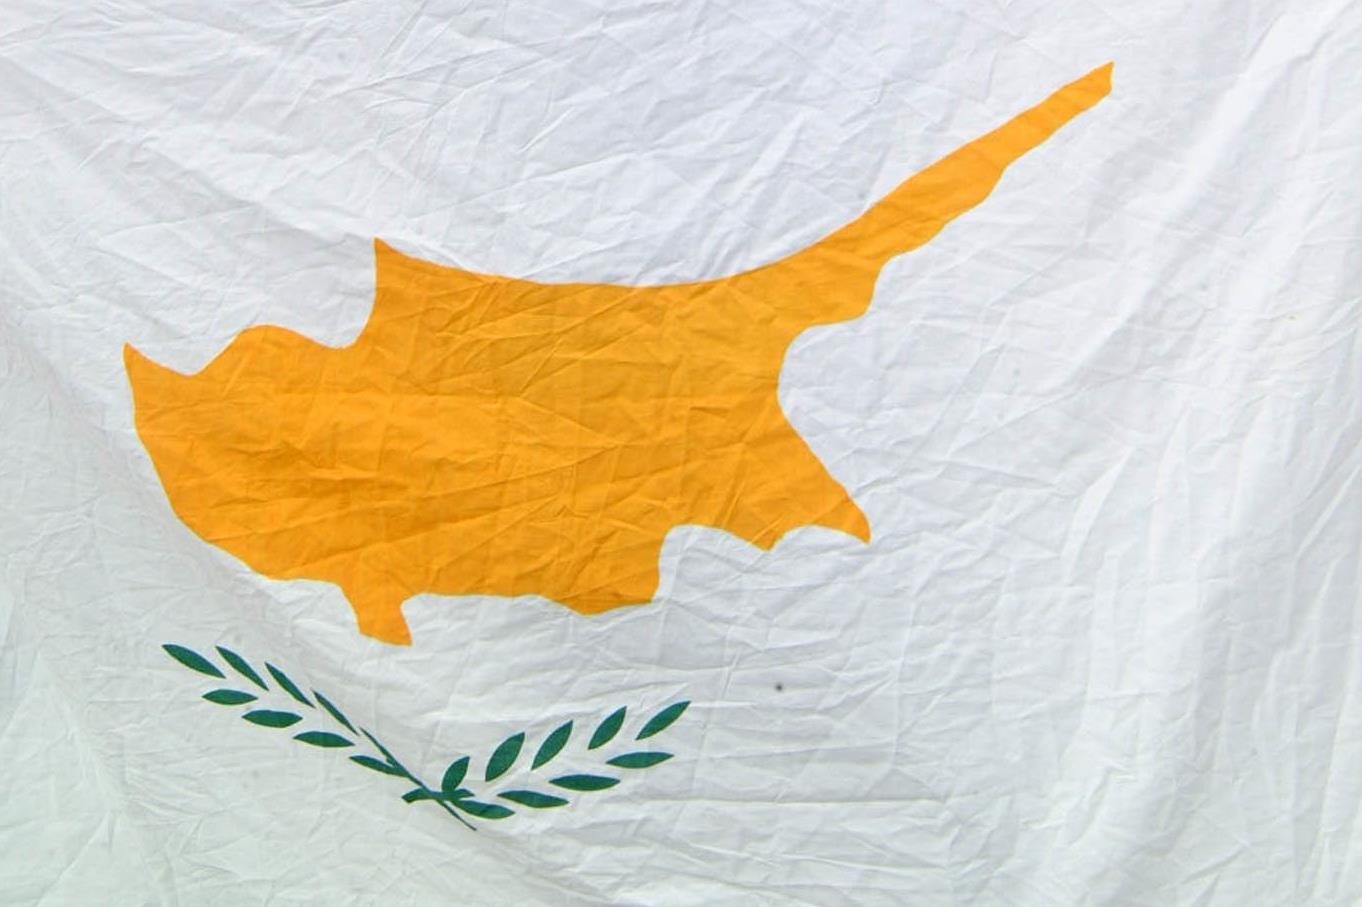 Κύπρος: Η παρουσία ελληνικών μαχητικών θα συνεχιστεί